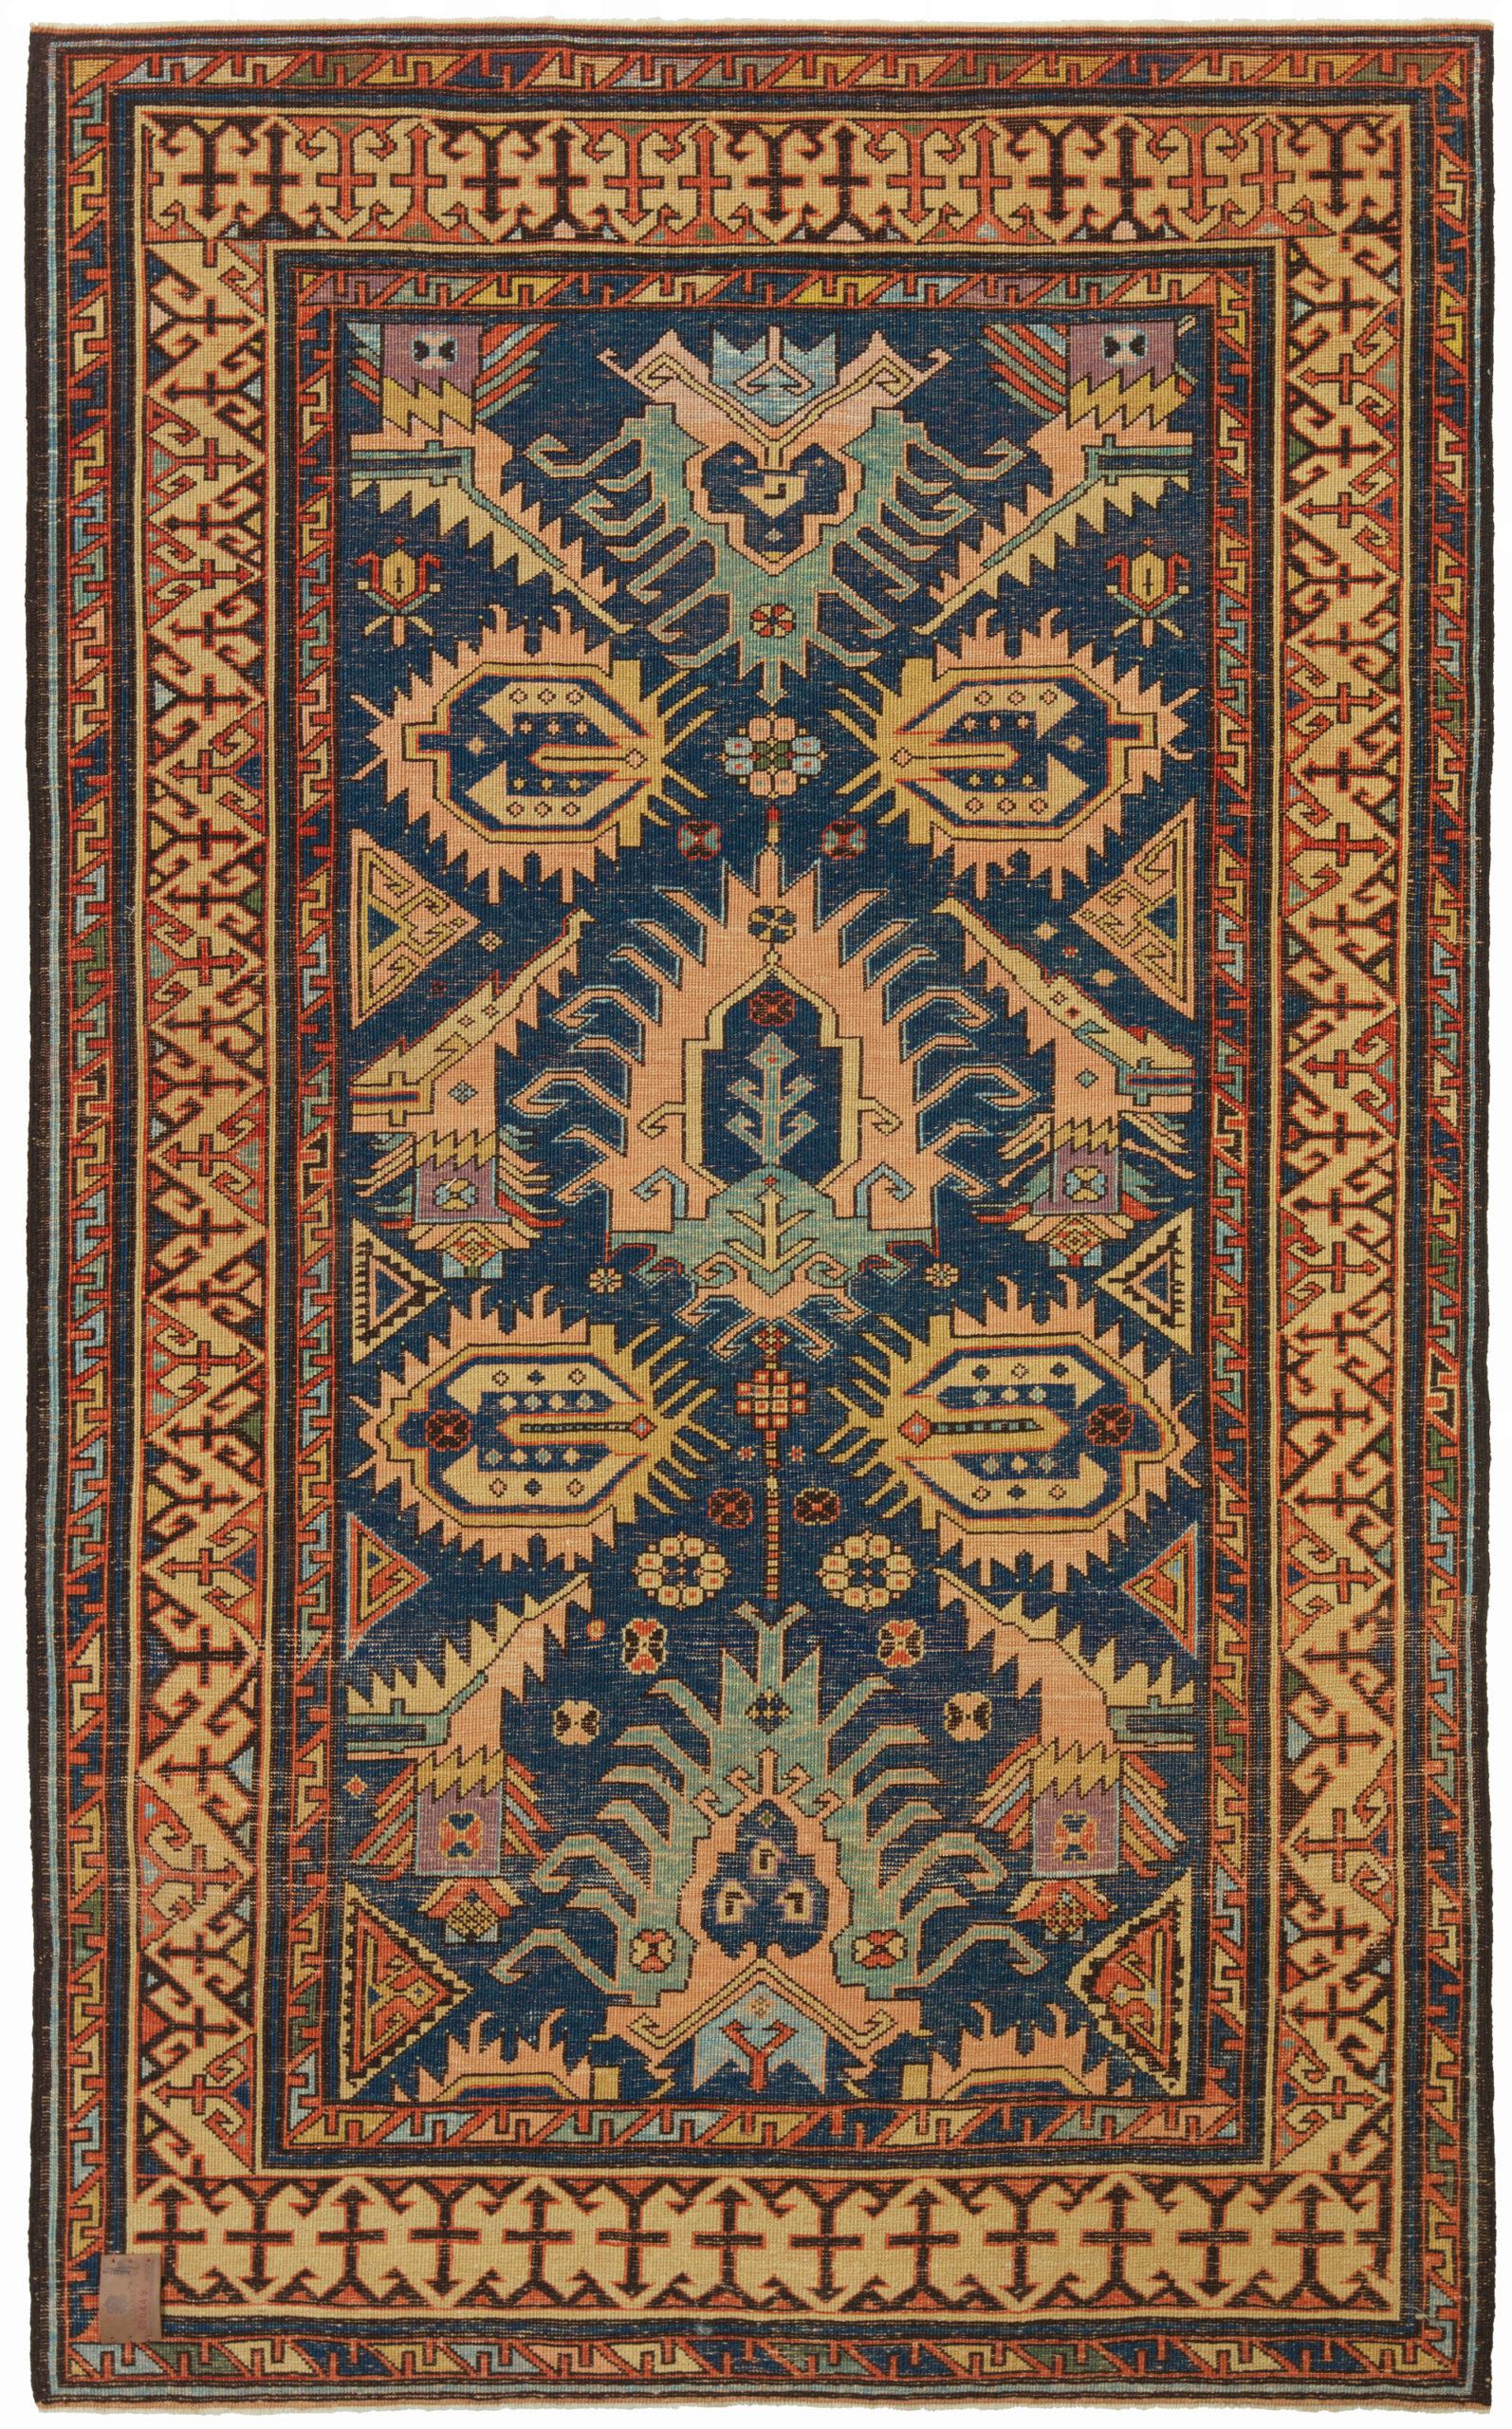 Dies ist ein Bidjov Kazak Teppich, entworfen Ende des 19. Jahrhunderts, ist eine Art von handgewebten Teppich, der aus der Kaukasusregion stammt, speziell aus der Stadt Bidjov, ein paar Meilen nördlich von Marasali. Wie bei vielen Ortsnamen ist die